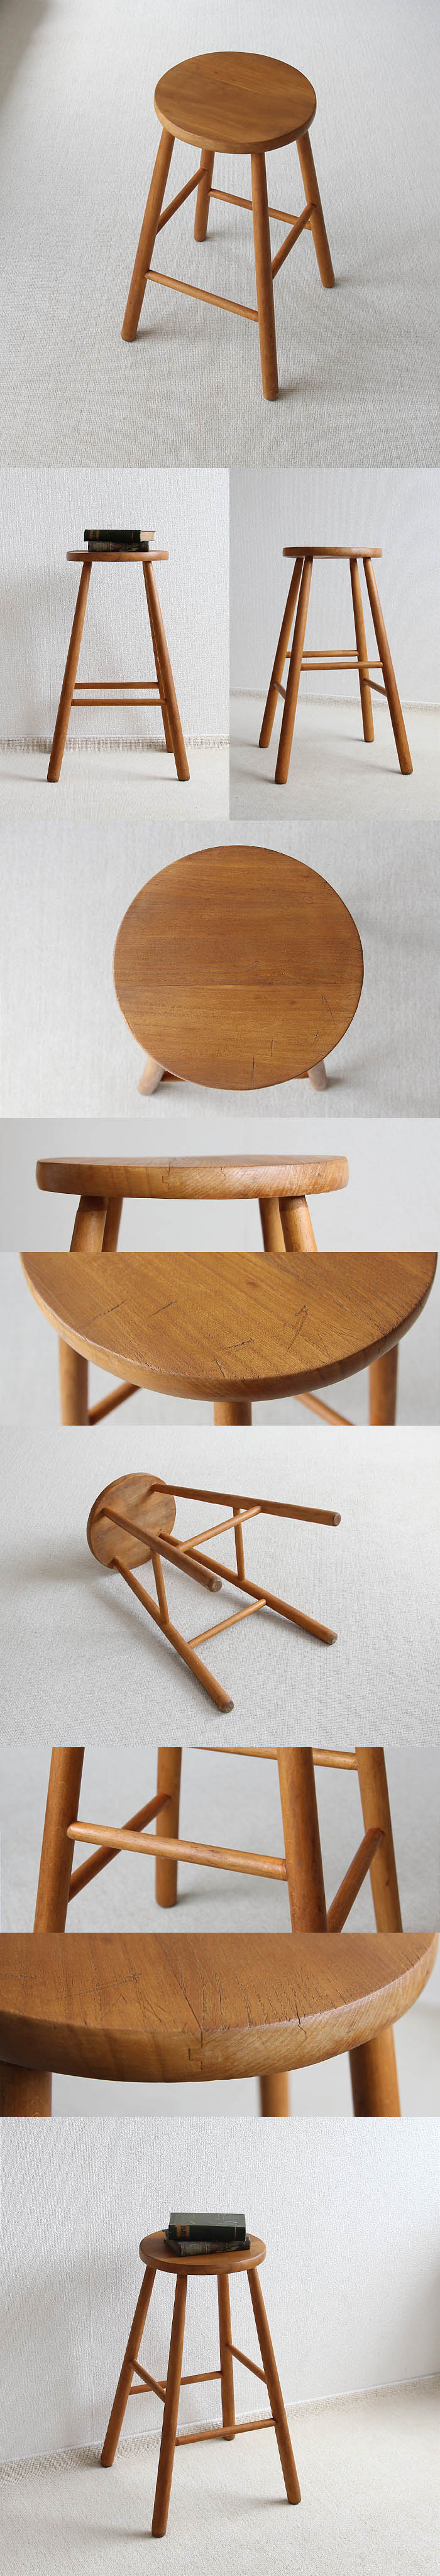 イギリス アンティーク ハイスツール 木製椅子 飾り台 カントリー 無垢材 家具 V-284